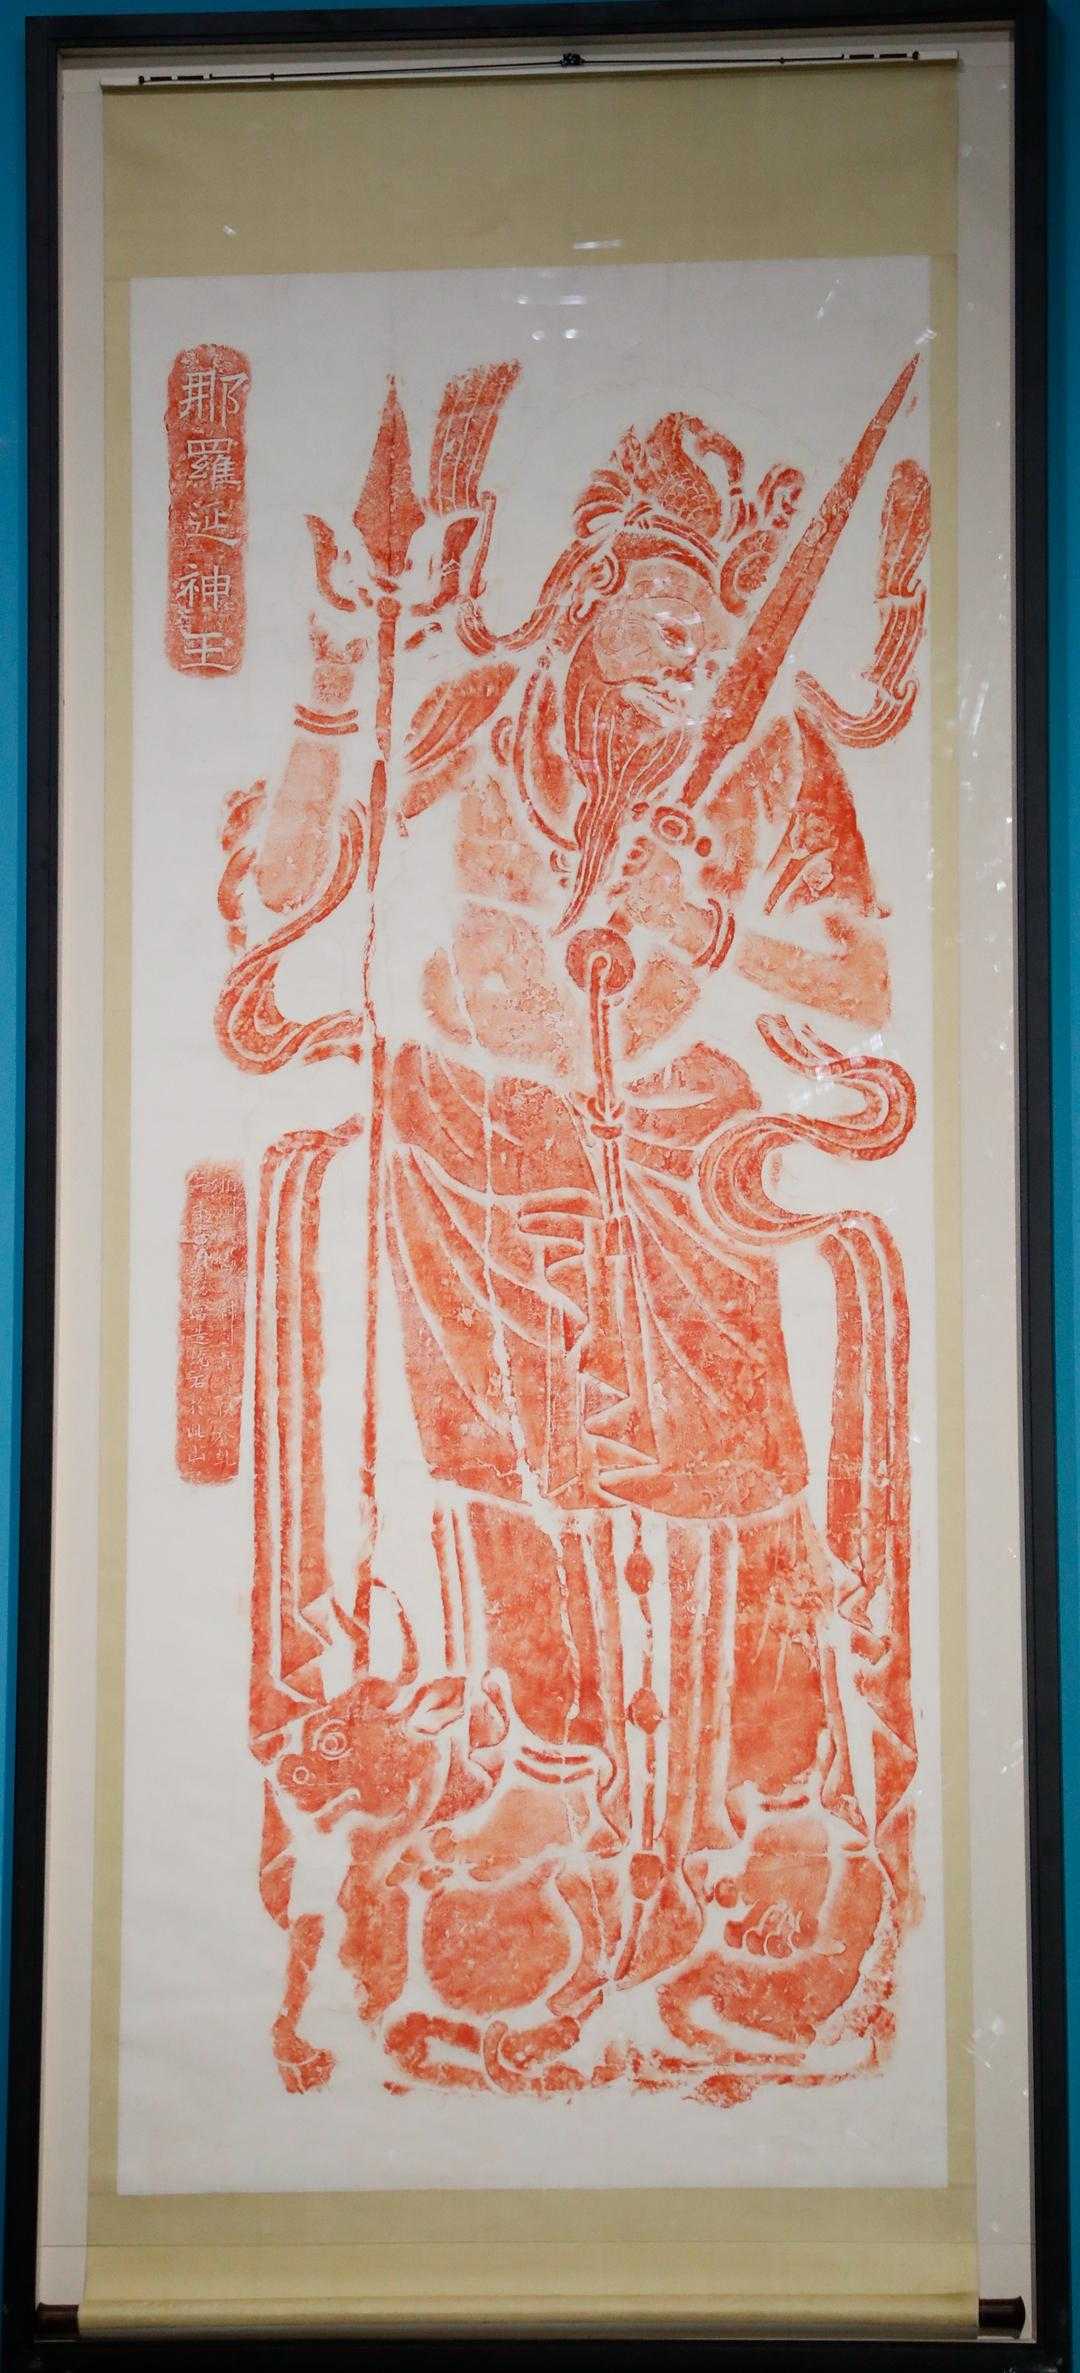 《图像的复兴—陕西省美术博物馆藏历代金石图像拓片精品研究展》